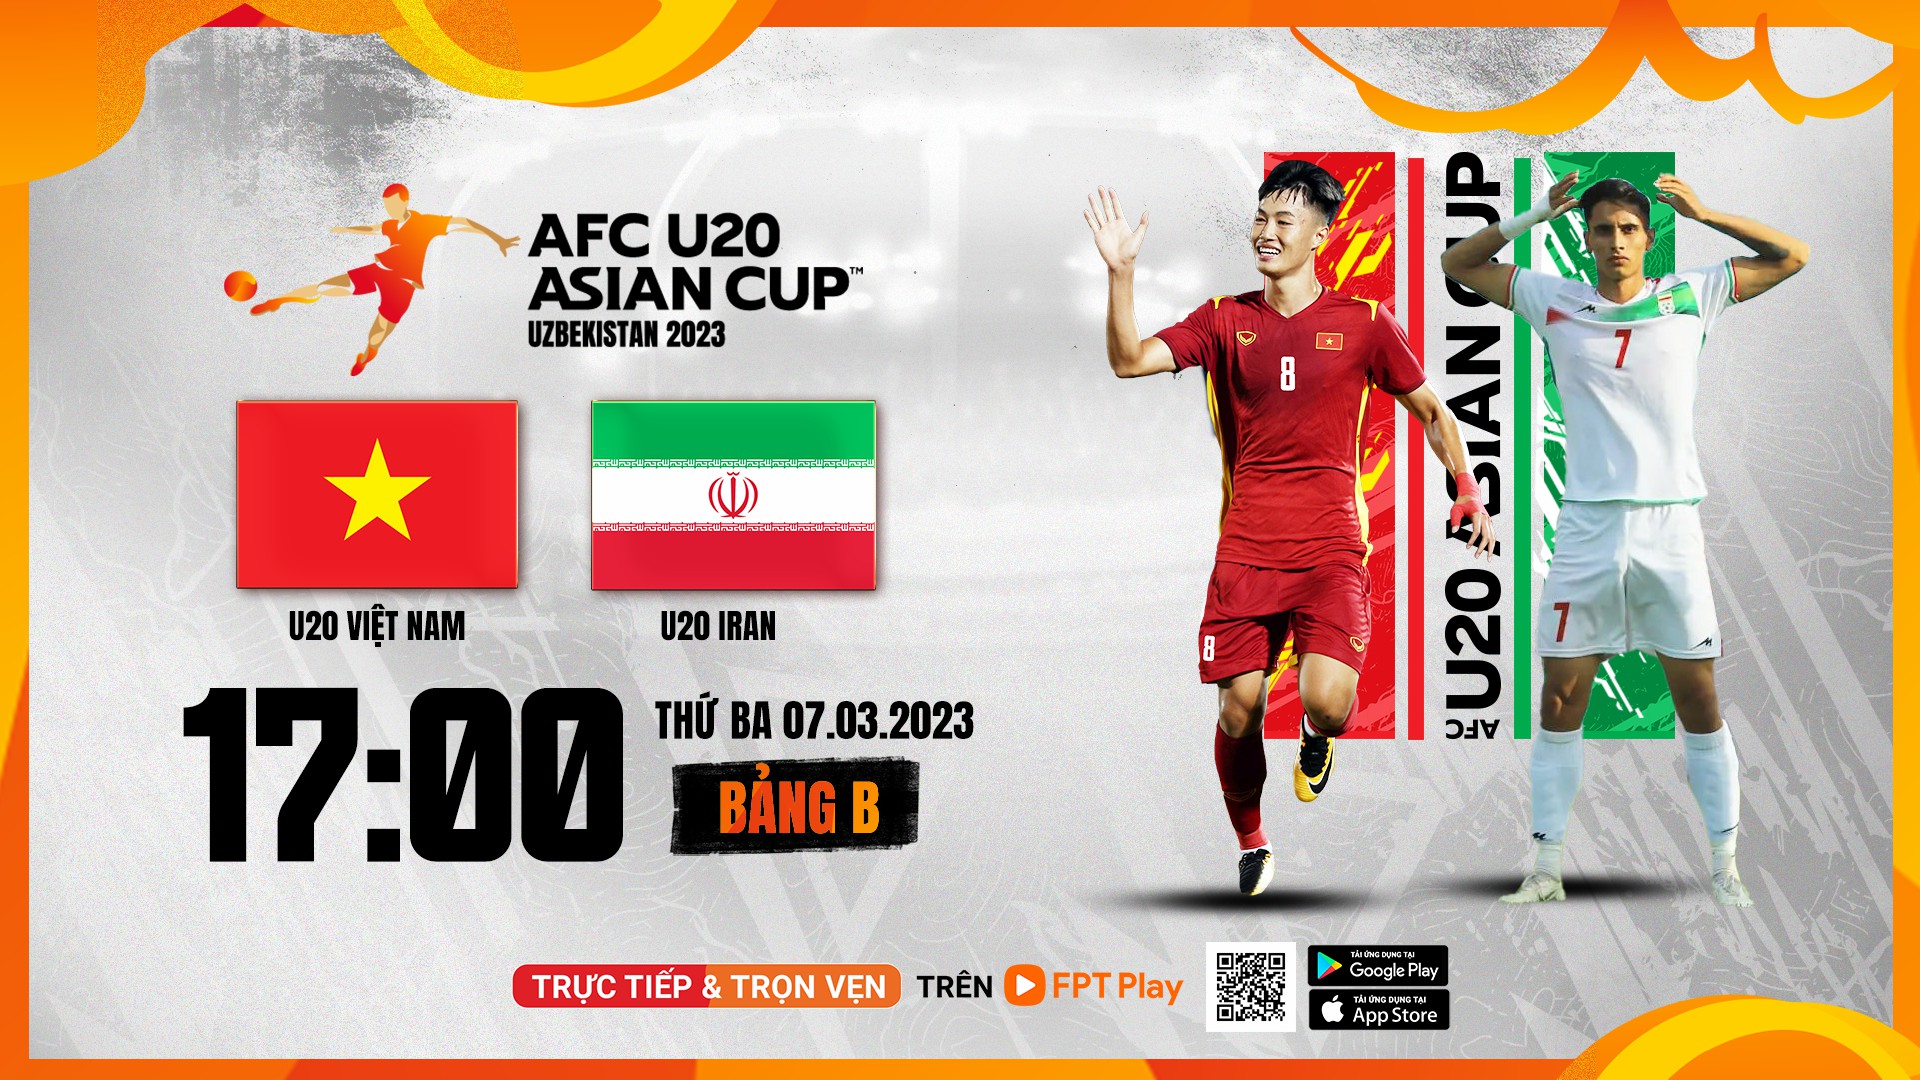 U20 Việt Nam, U20 Iran, fpt play